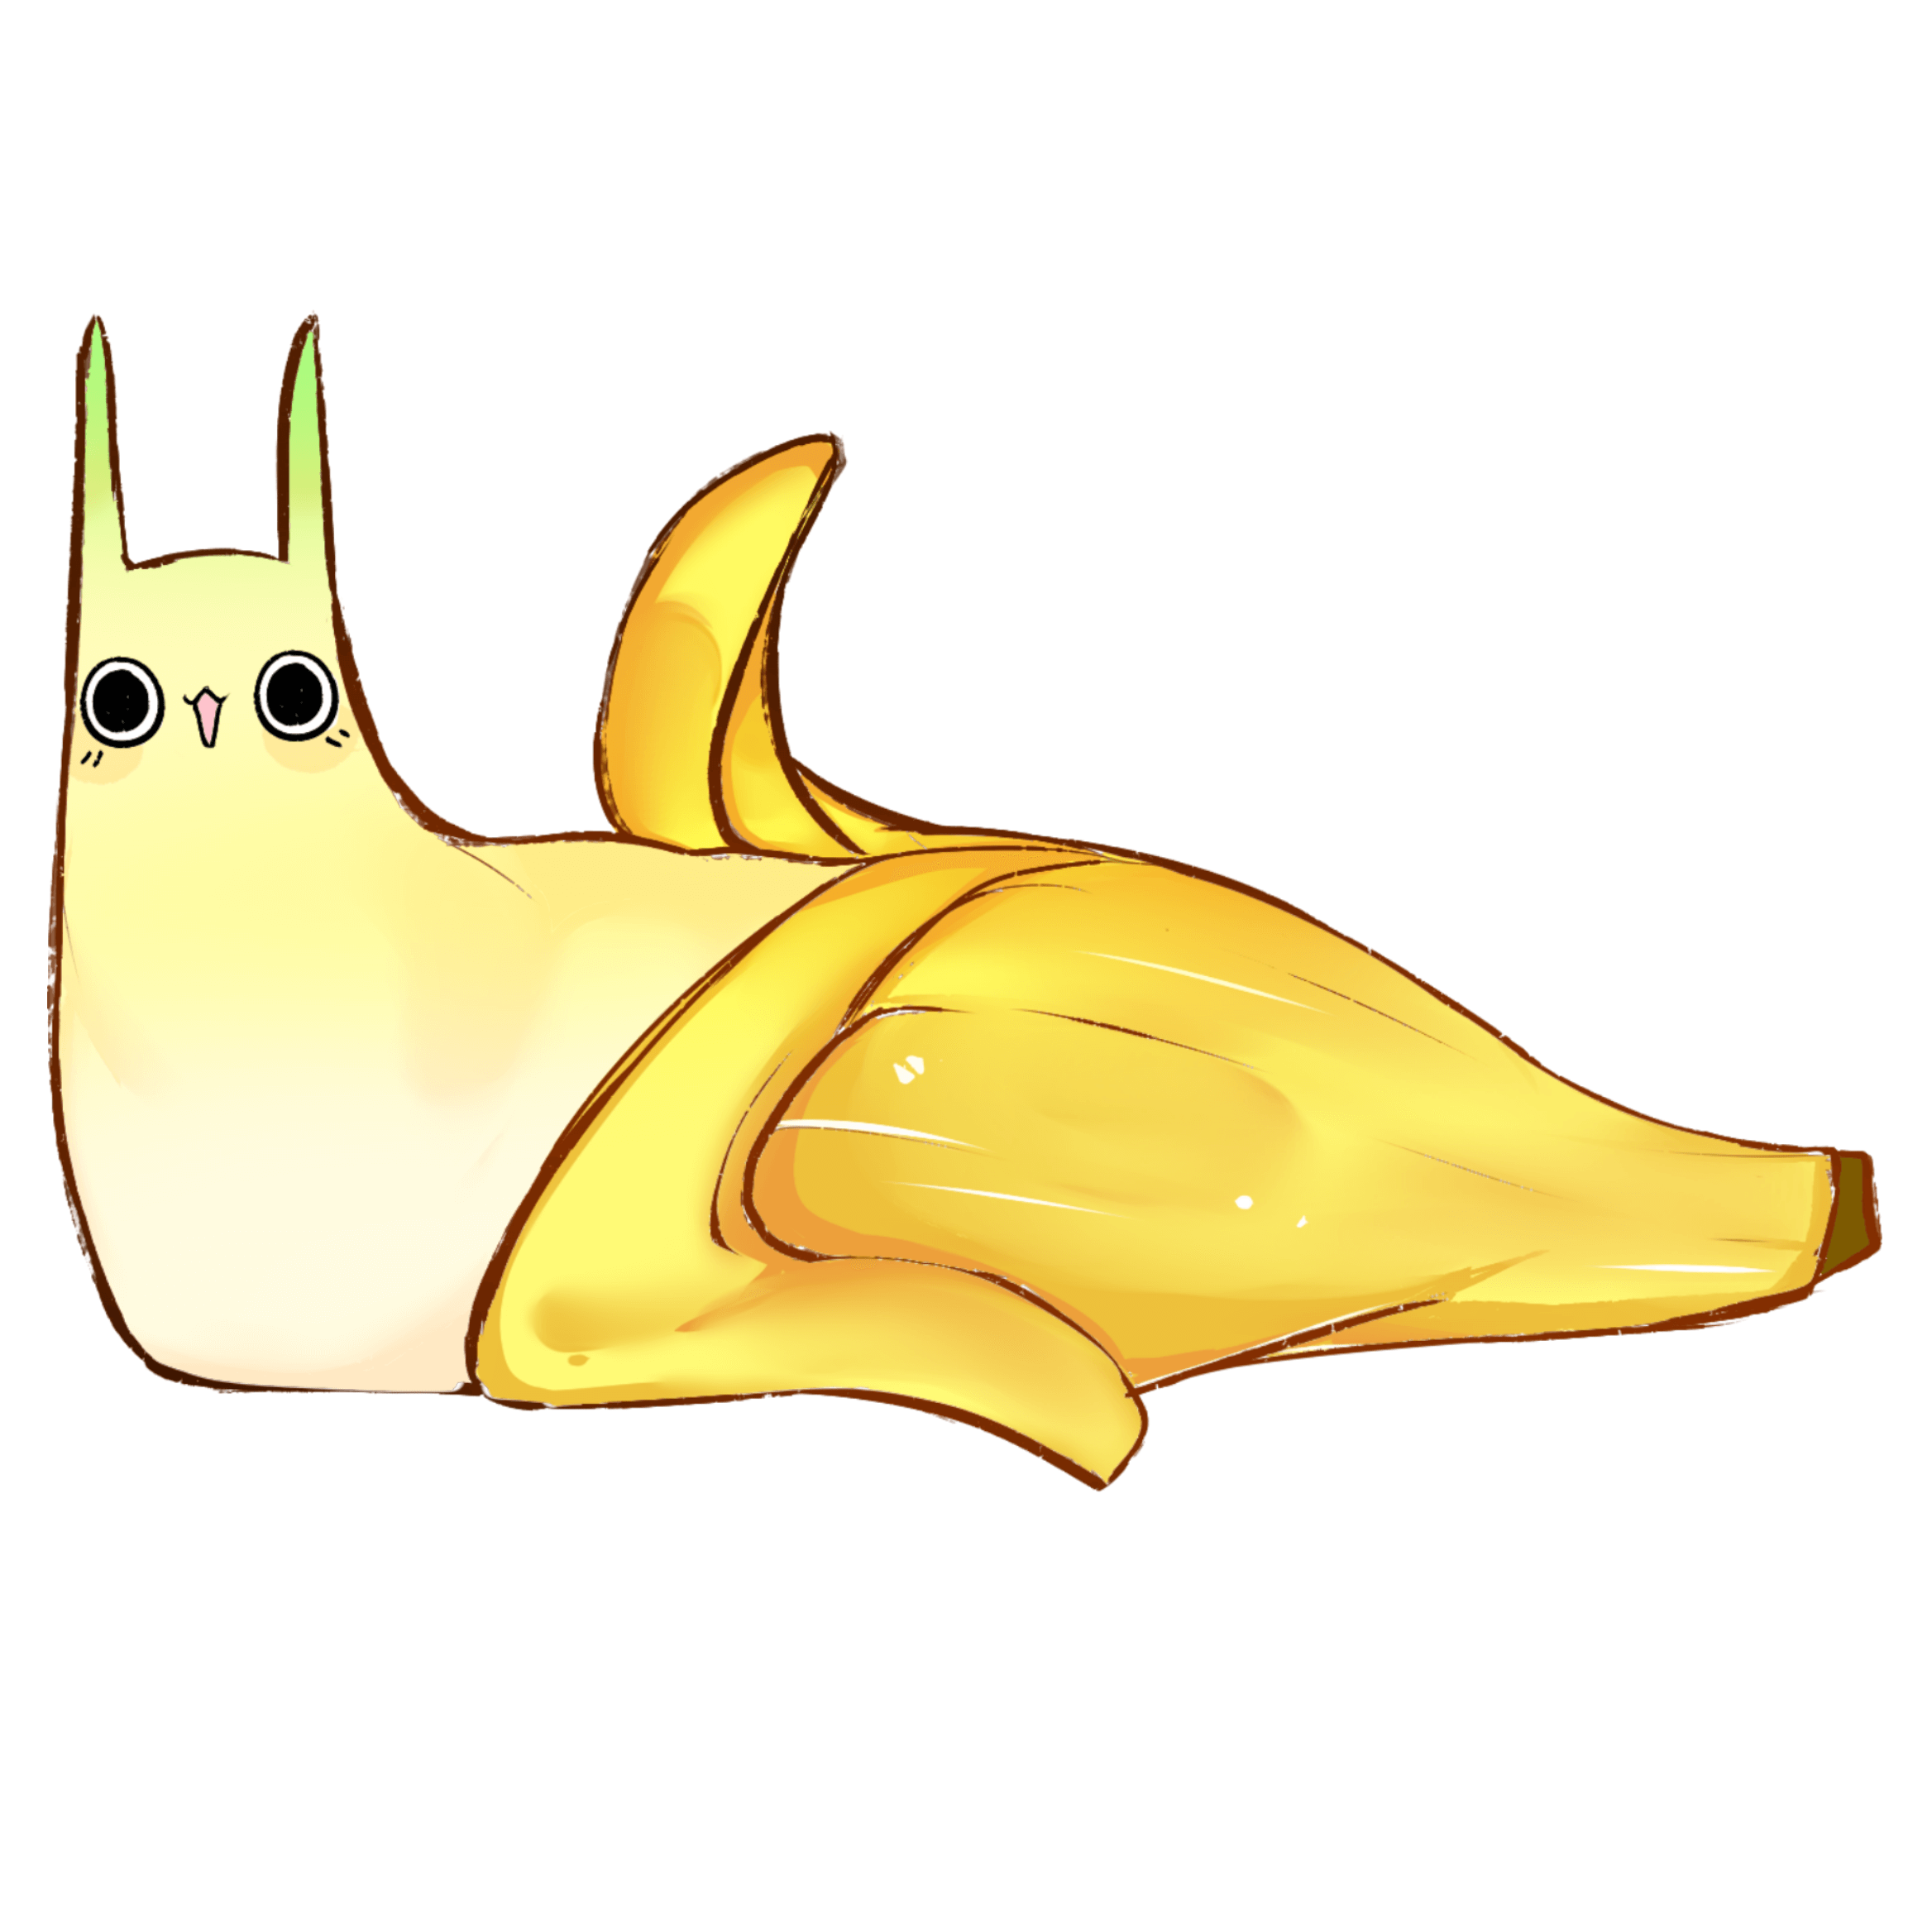 Banana Slug Logo